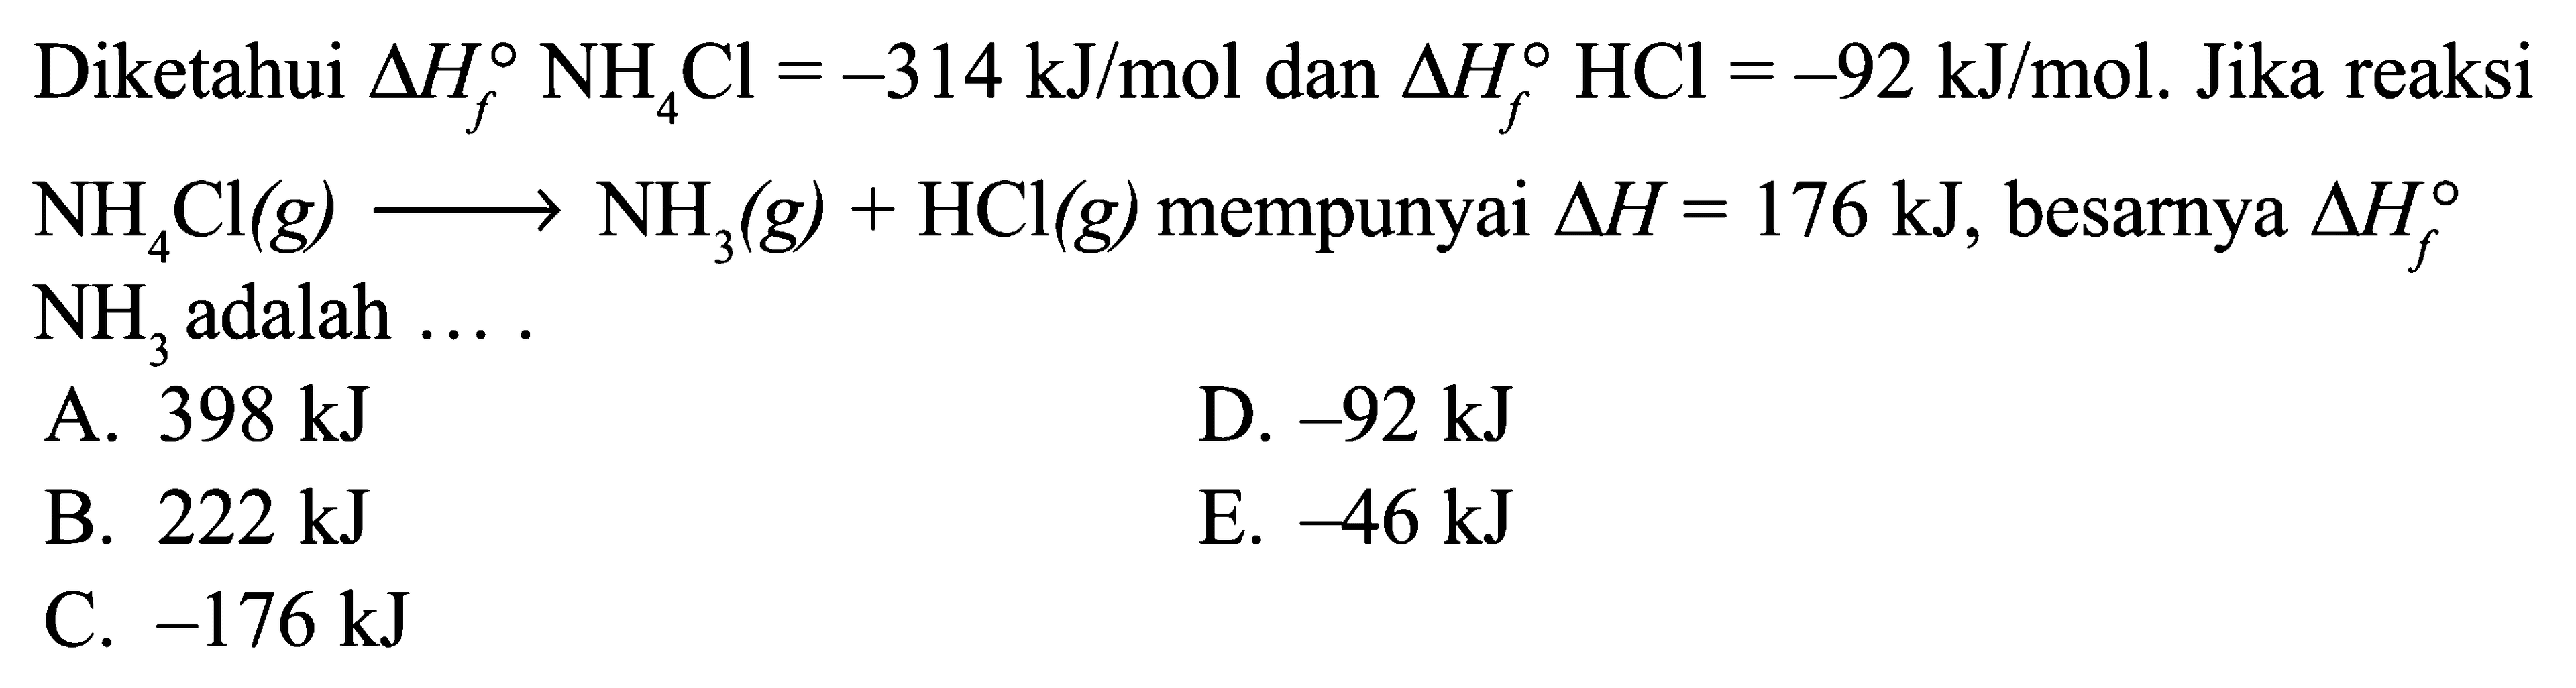 Diketahui delta Hf NH4Cl=-314 kJ/mol dan delta Hf HCl=-92 kJ/mol. Jika reaksi NH4Cl(g) -> NH3(g) + HCl(g) mempunyai delta H=176 kJ, besarnya  delta Hf NH3 adalah .... 
